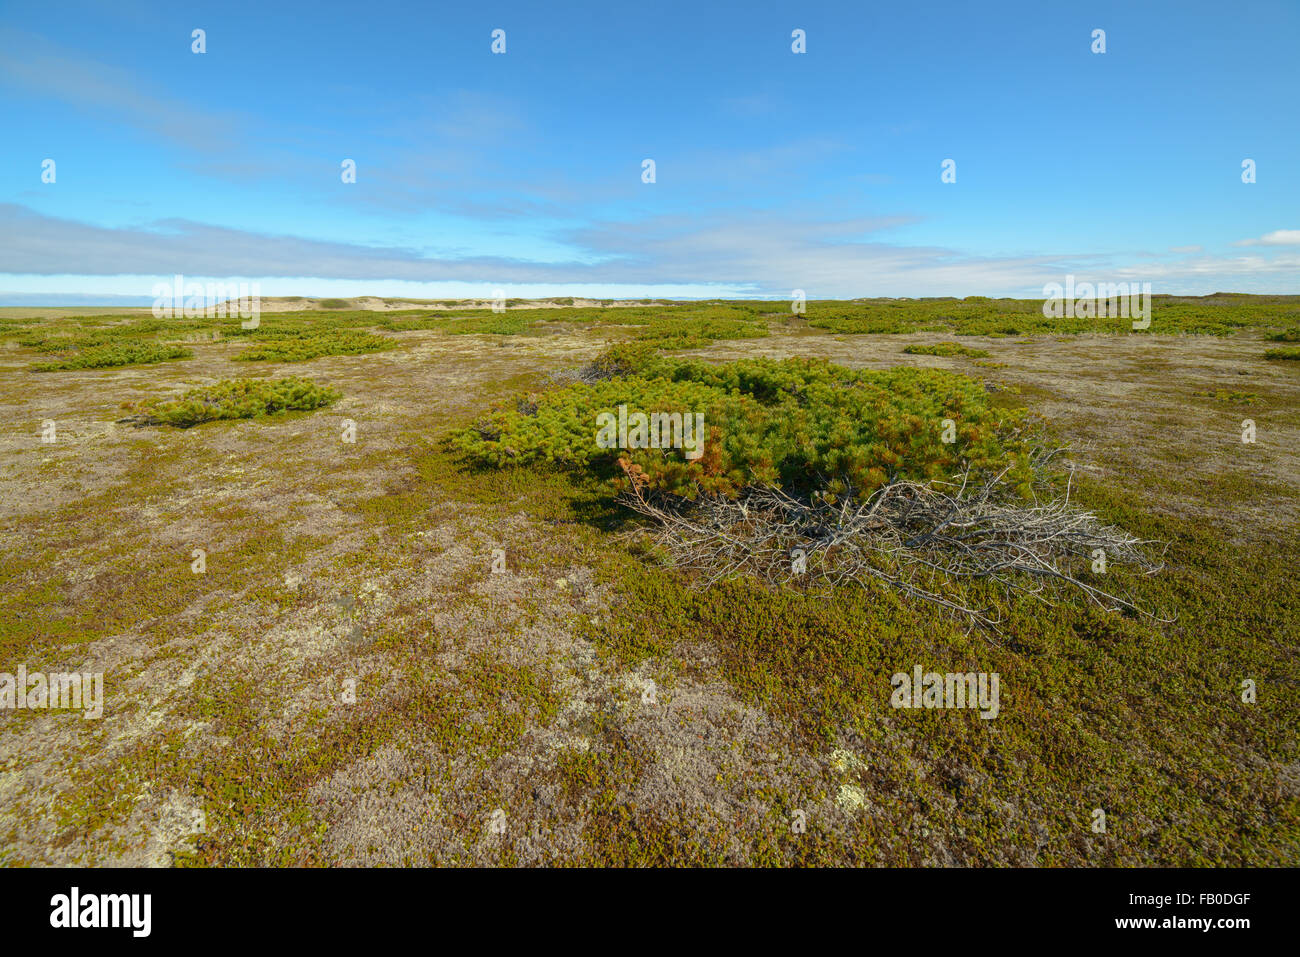 La natura, la flora e la fauna della parte settentrionale dell'isola di Sakhalin, Russia. Paesaggi, paesaggi marini, animali. Spiedo di sabbia Piltun. Foto Stock